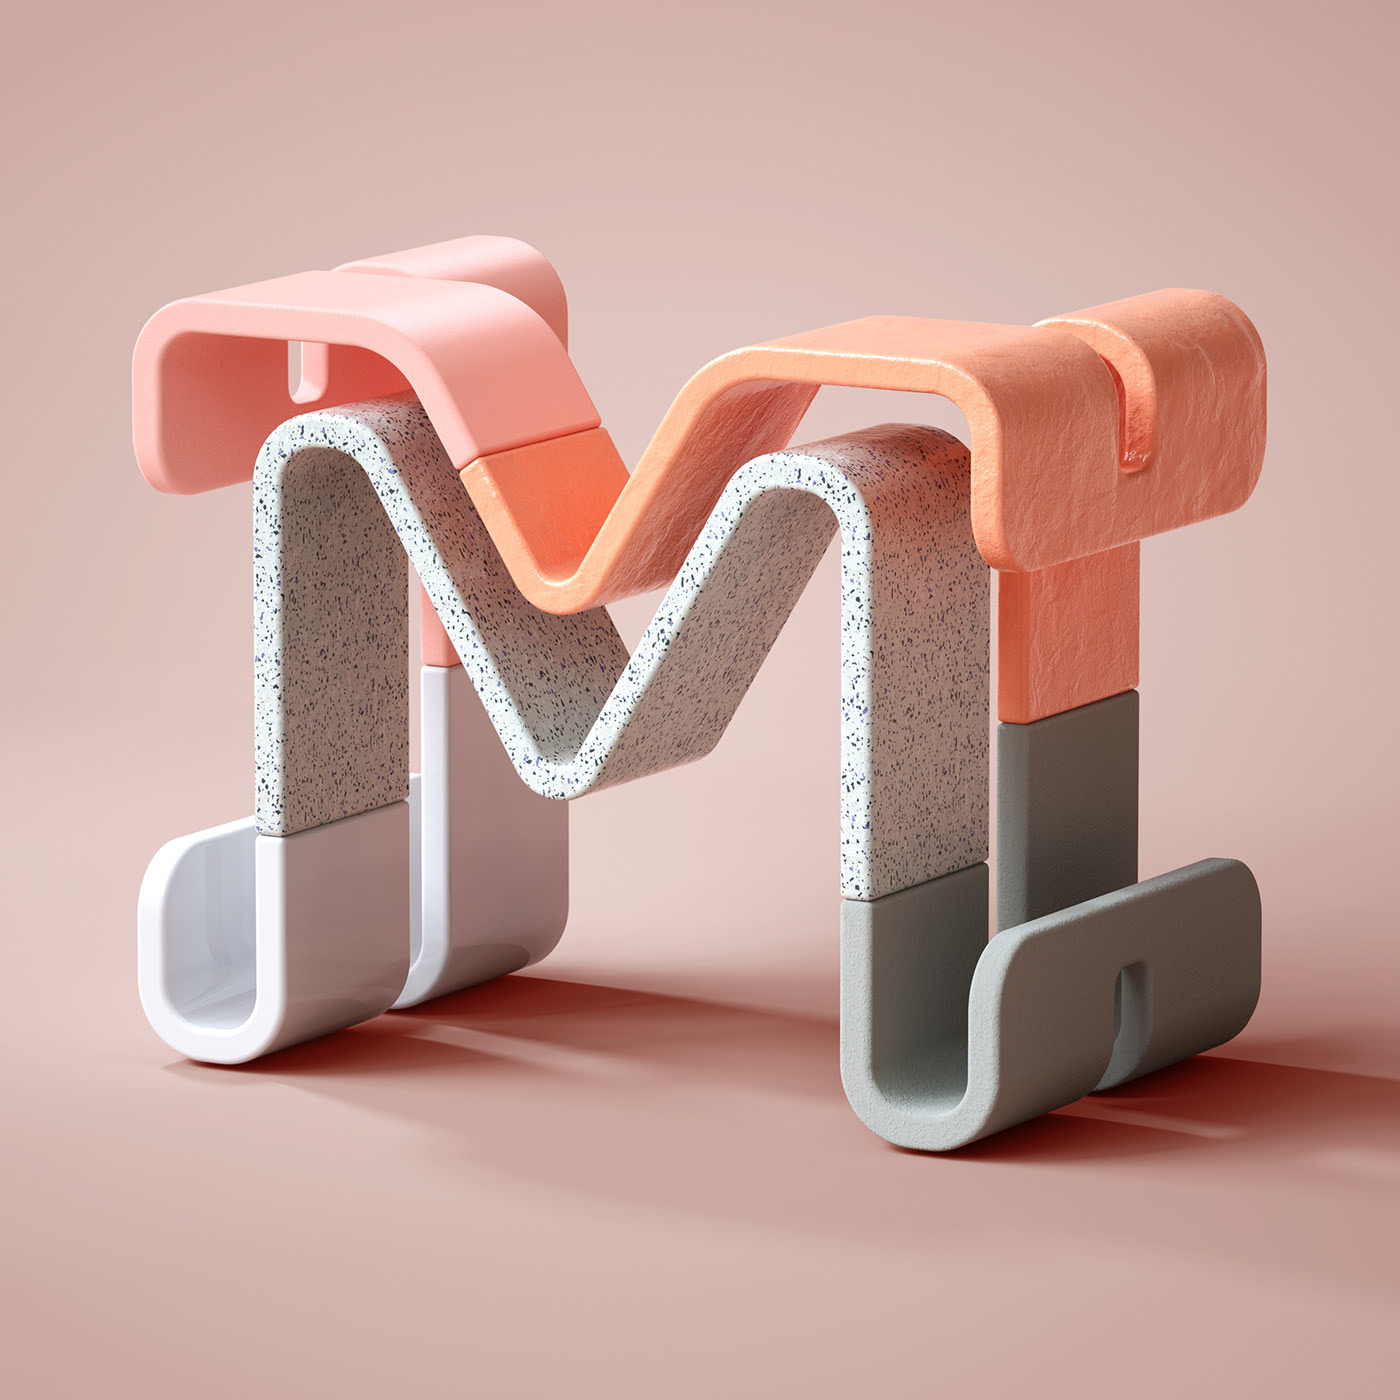 Modish 3D Typography by BÜRO UFHO - 36 Days of Type'19